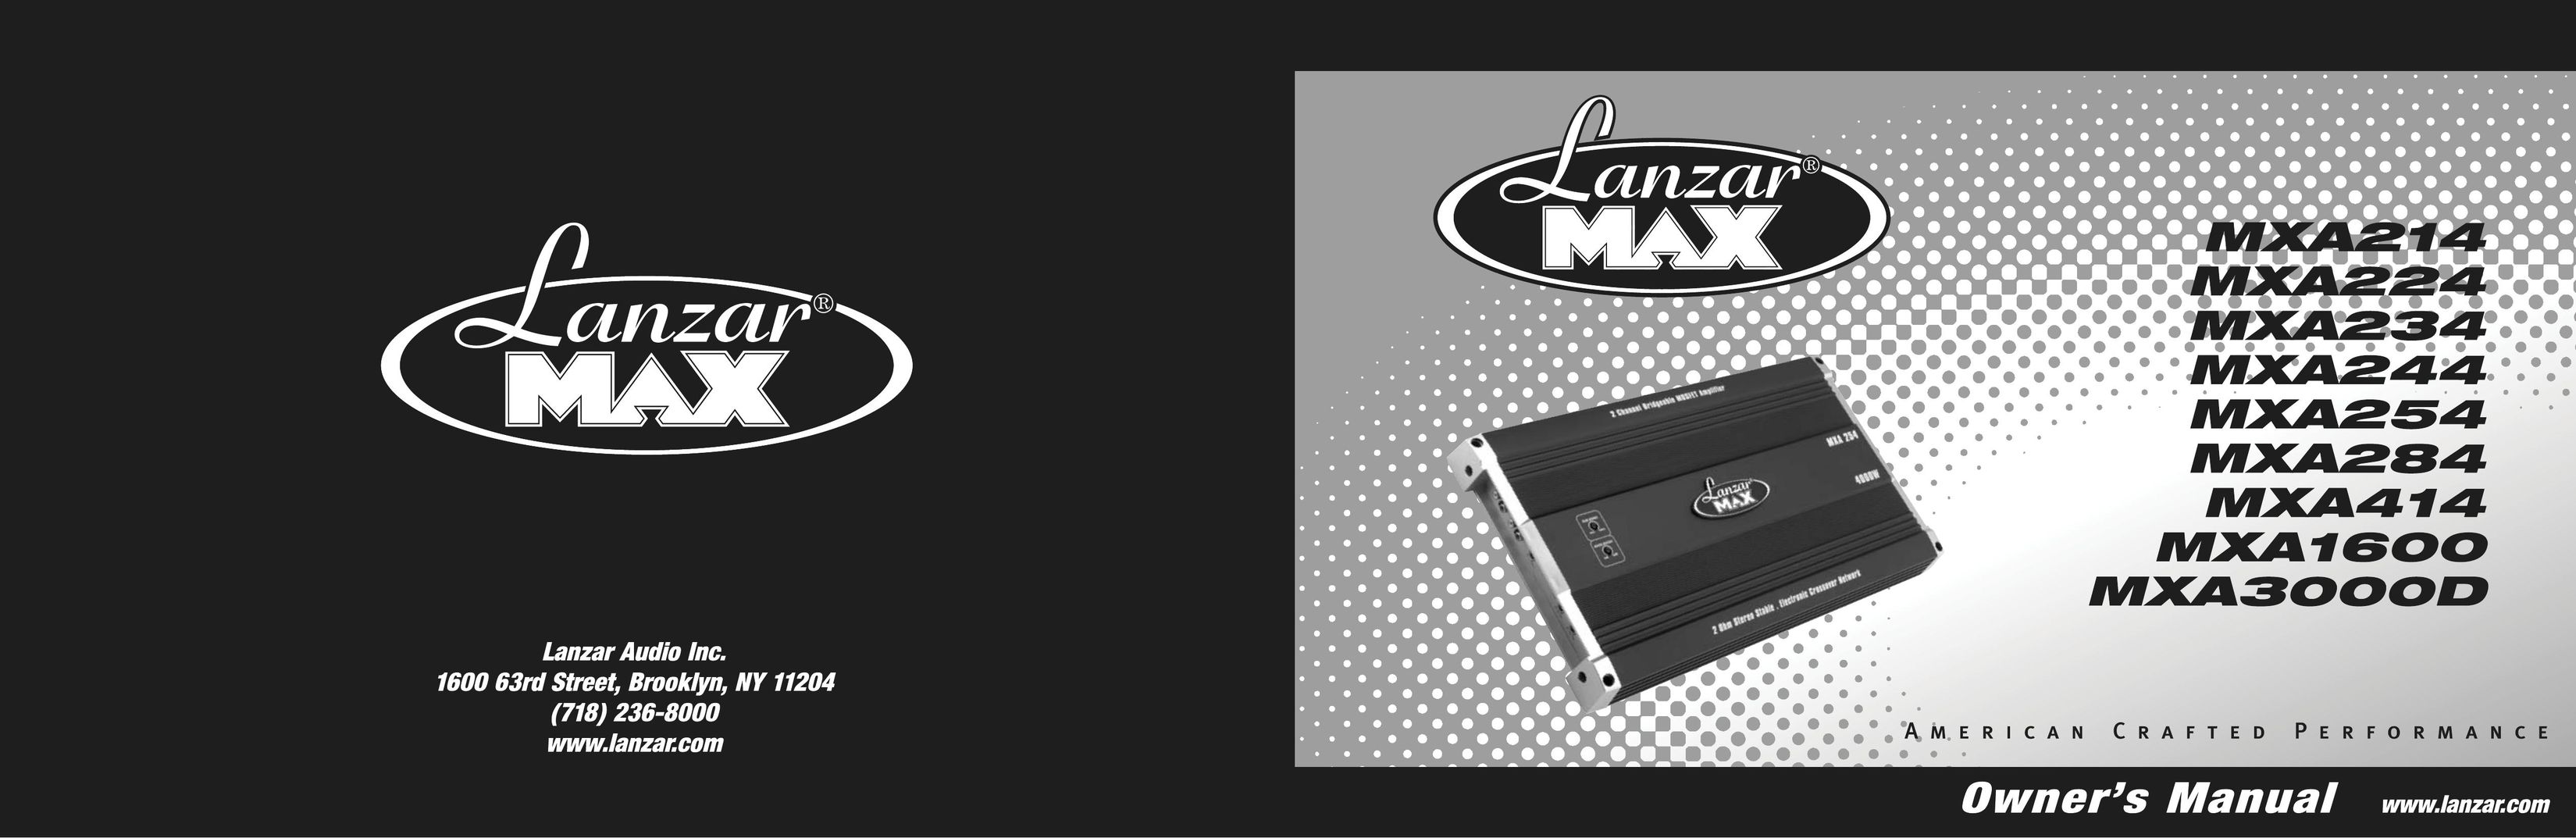 Lanzar Car Audio MXA234 Car Amplifier User Manual